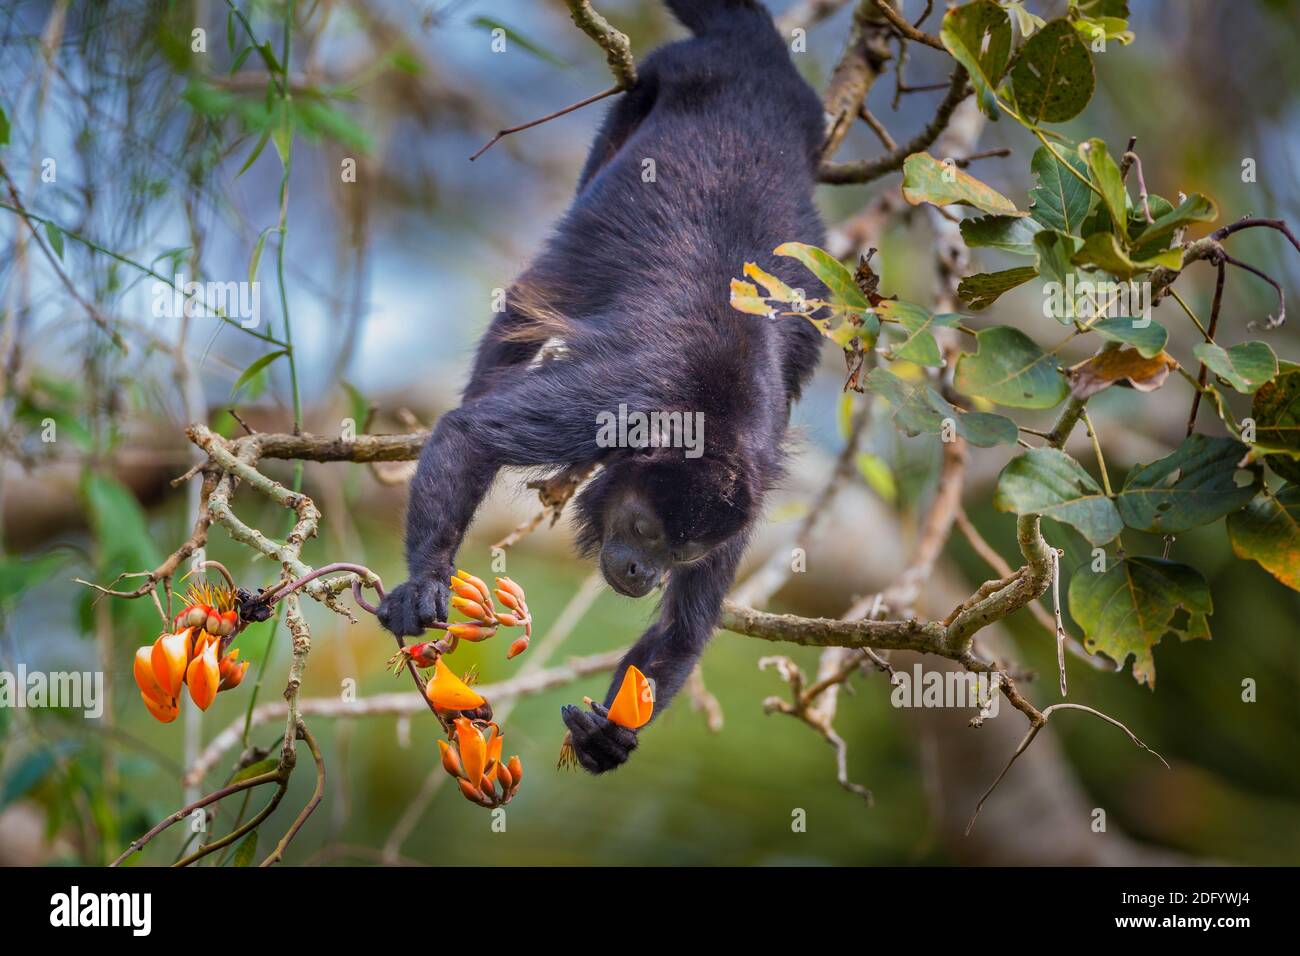 La faune du Panama avec un singe Manetay Howler, Alouatta palliata, se nourrissant de fleurs dans la forêt tropicale du parc national de Soberania, République du Panama. Banque D'Images